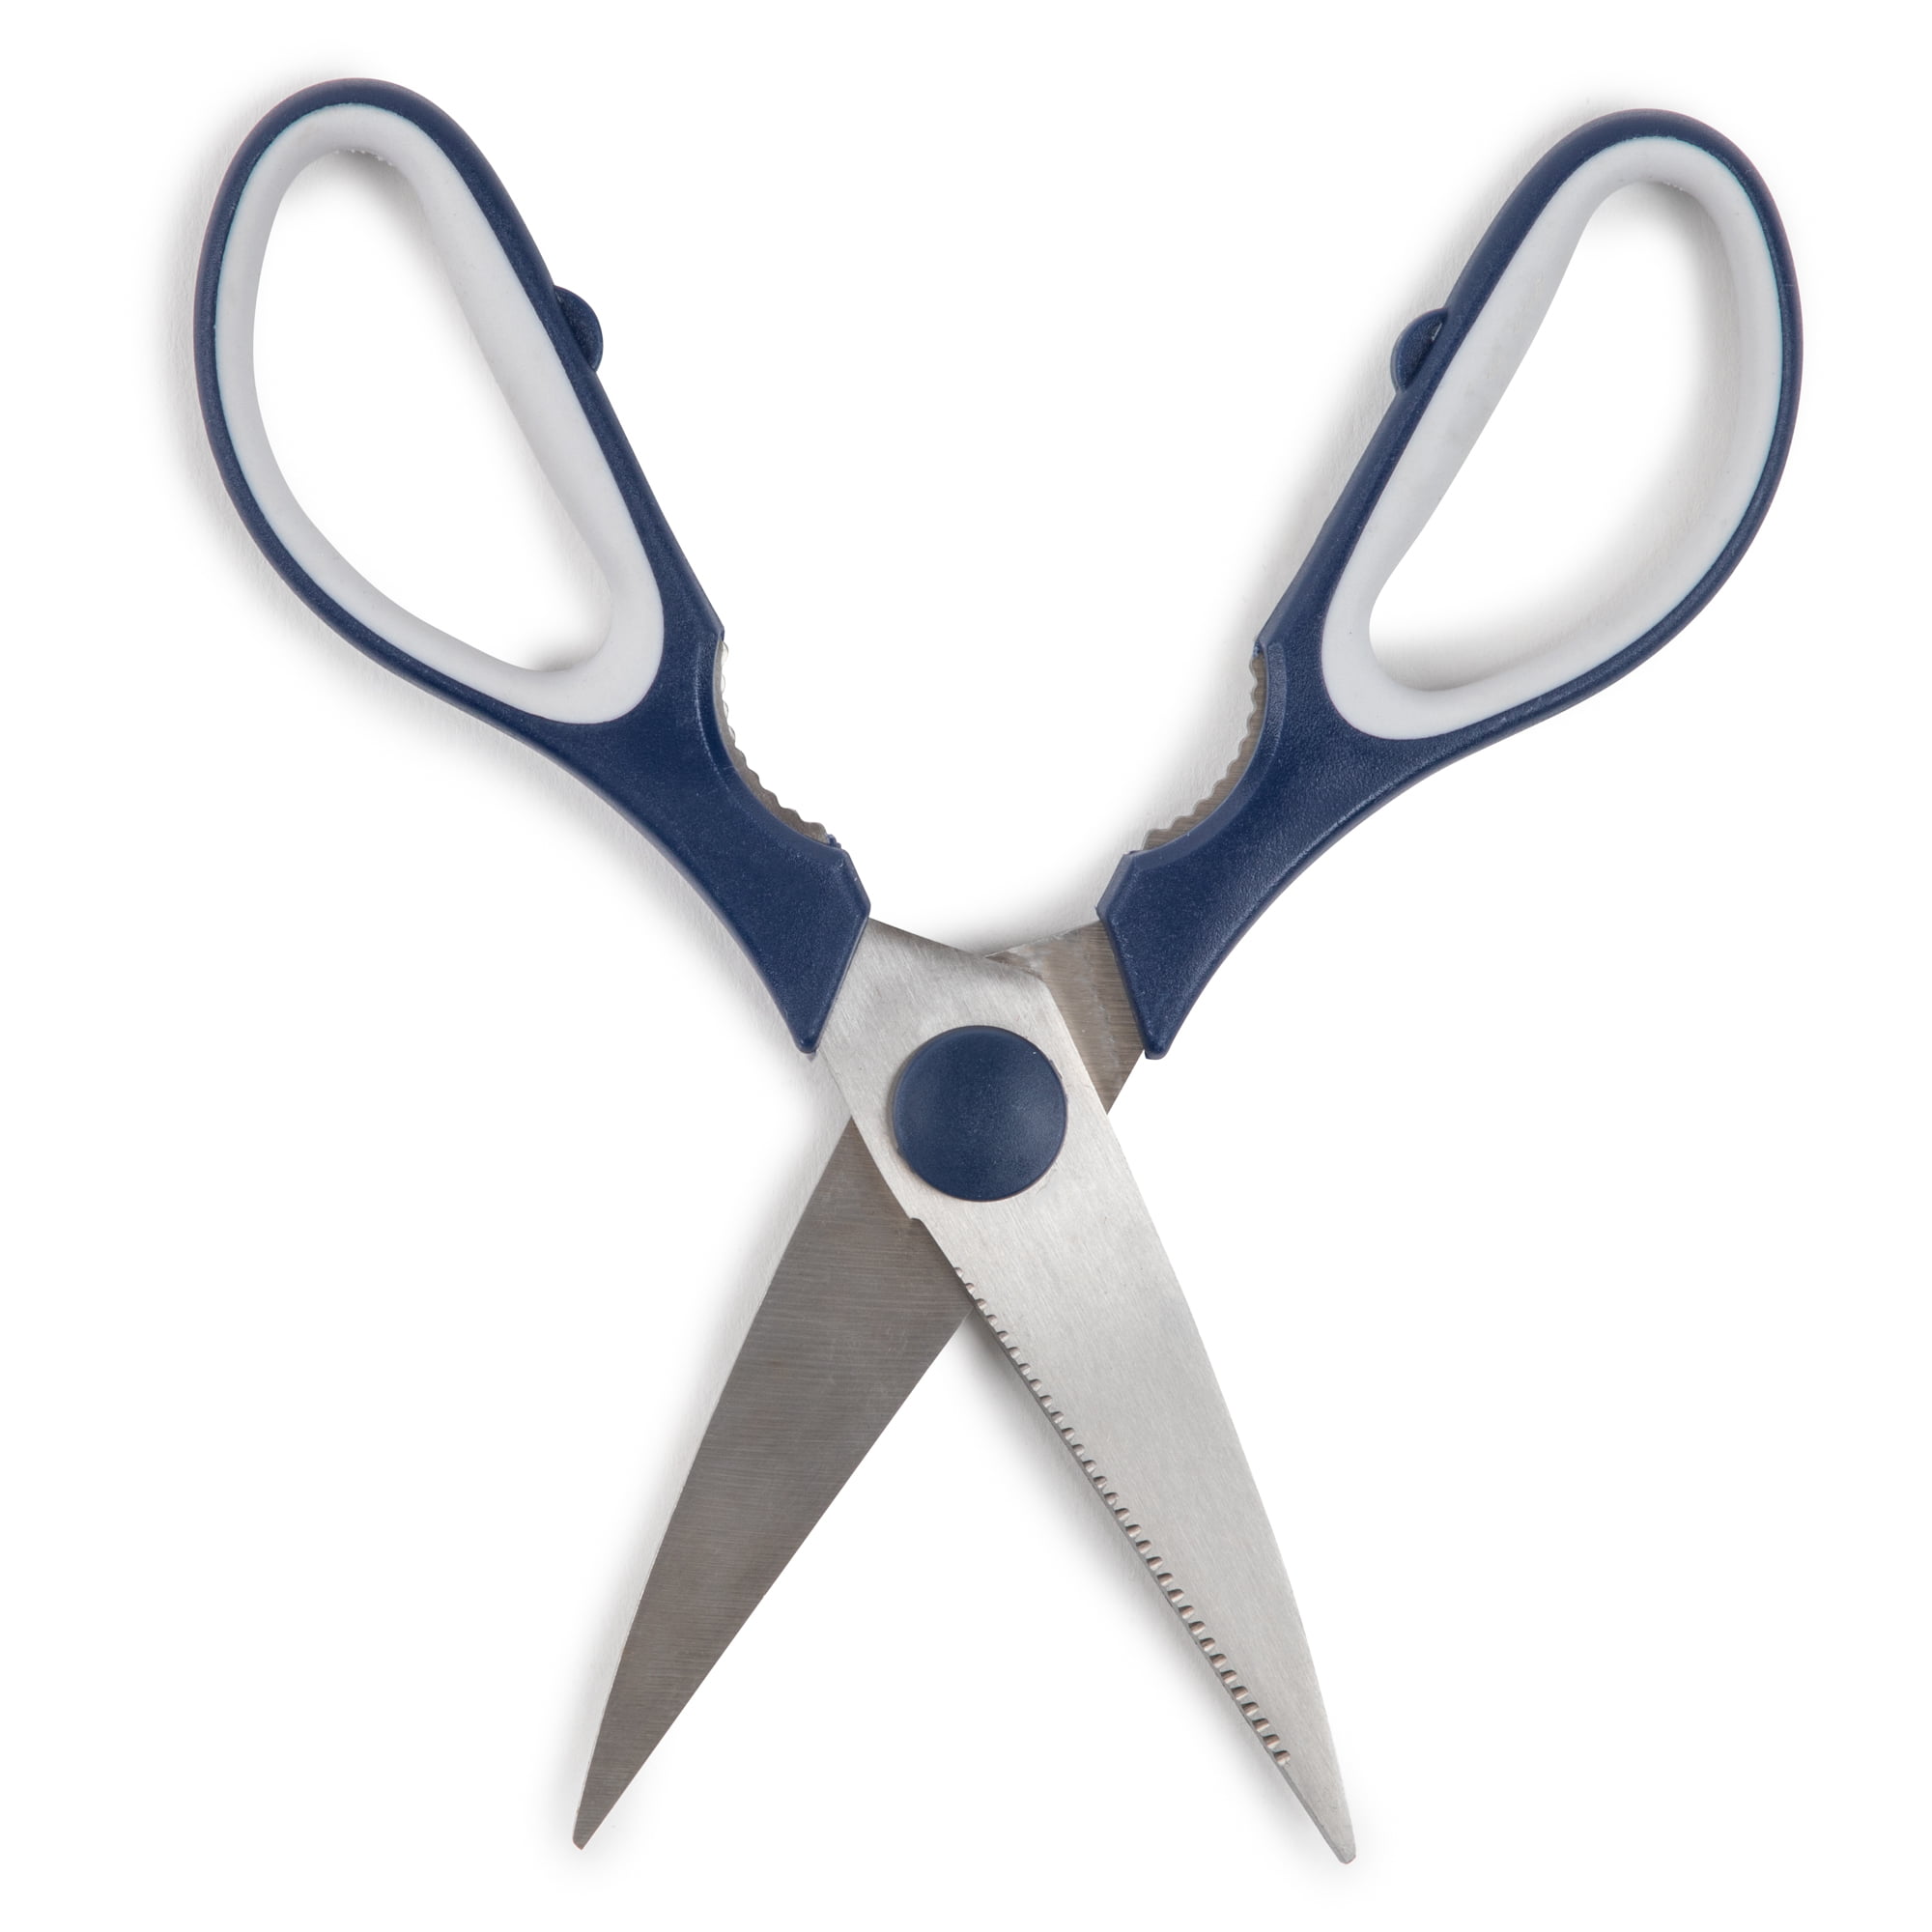 Kitchen scissors – CRISTEL USA